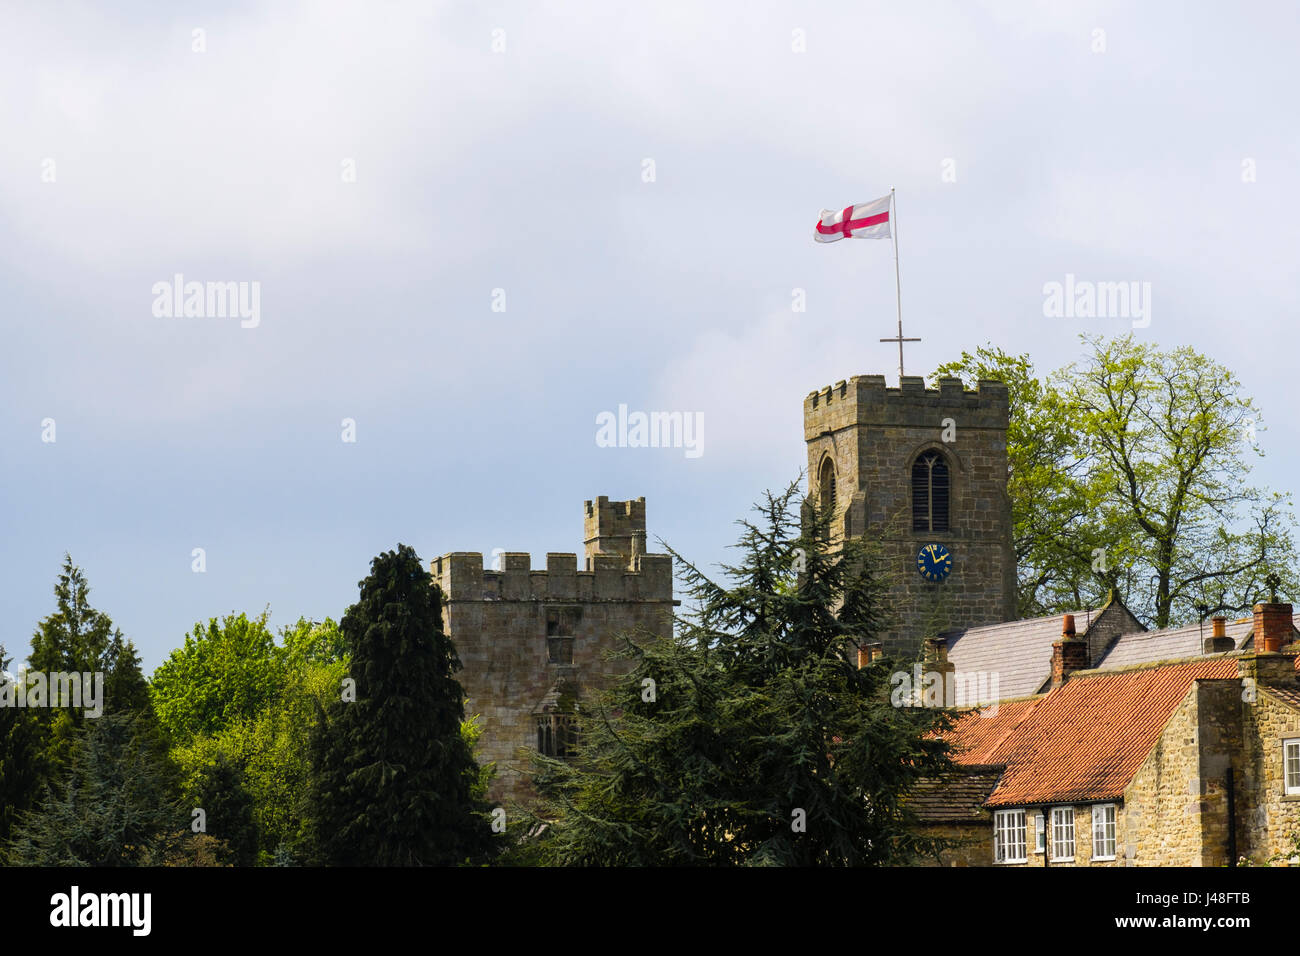 Drapeau anglais sur l'église St Nicolas du 15ème siècle à côté de la tour-porche de Marmion manoir perdu. Tanfield ouest au nord Yorkshire Angleterre Royaume-uni Grande-Bretagne Banque D'Images